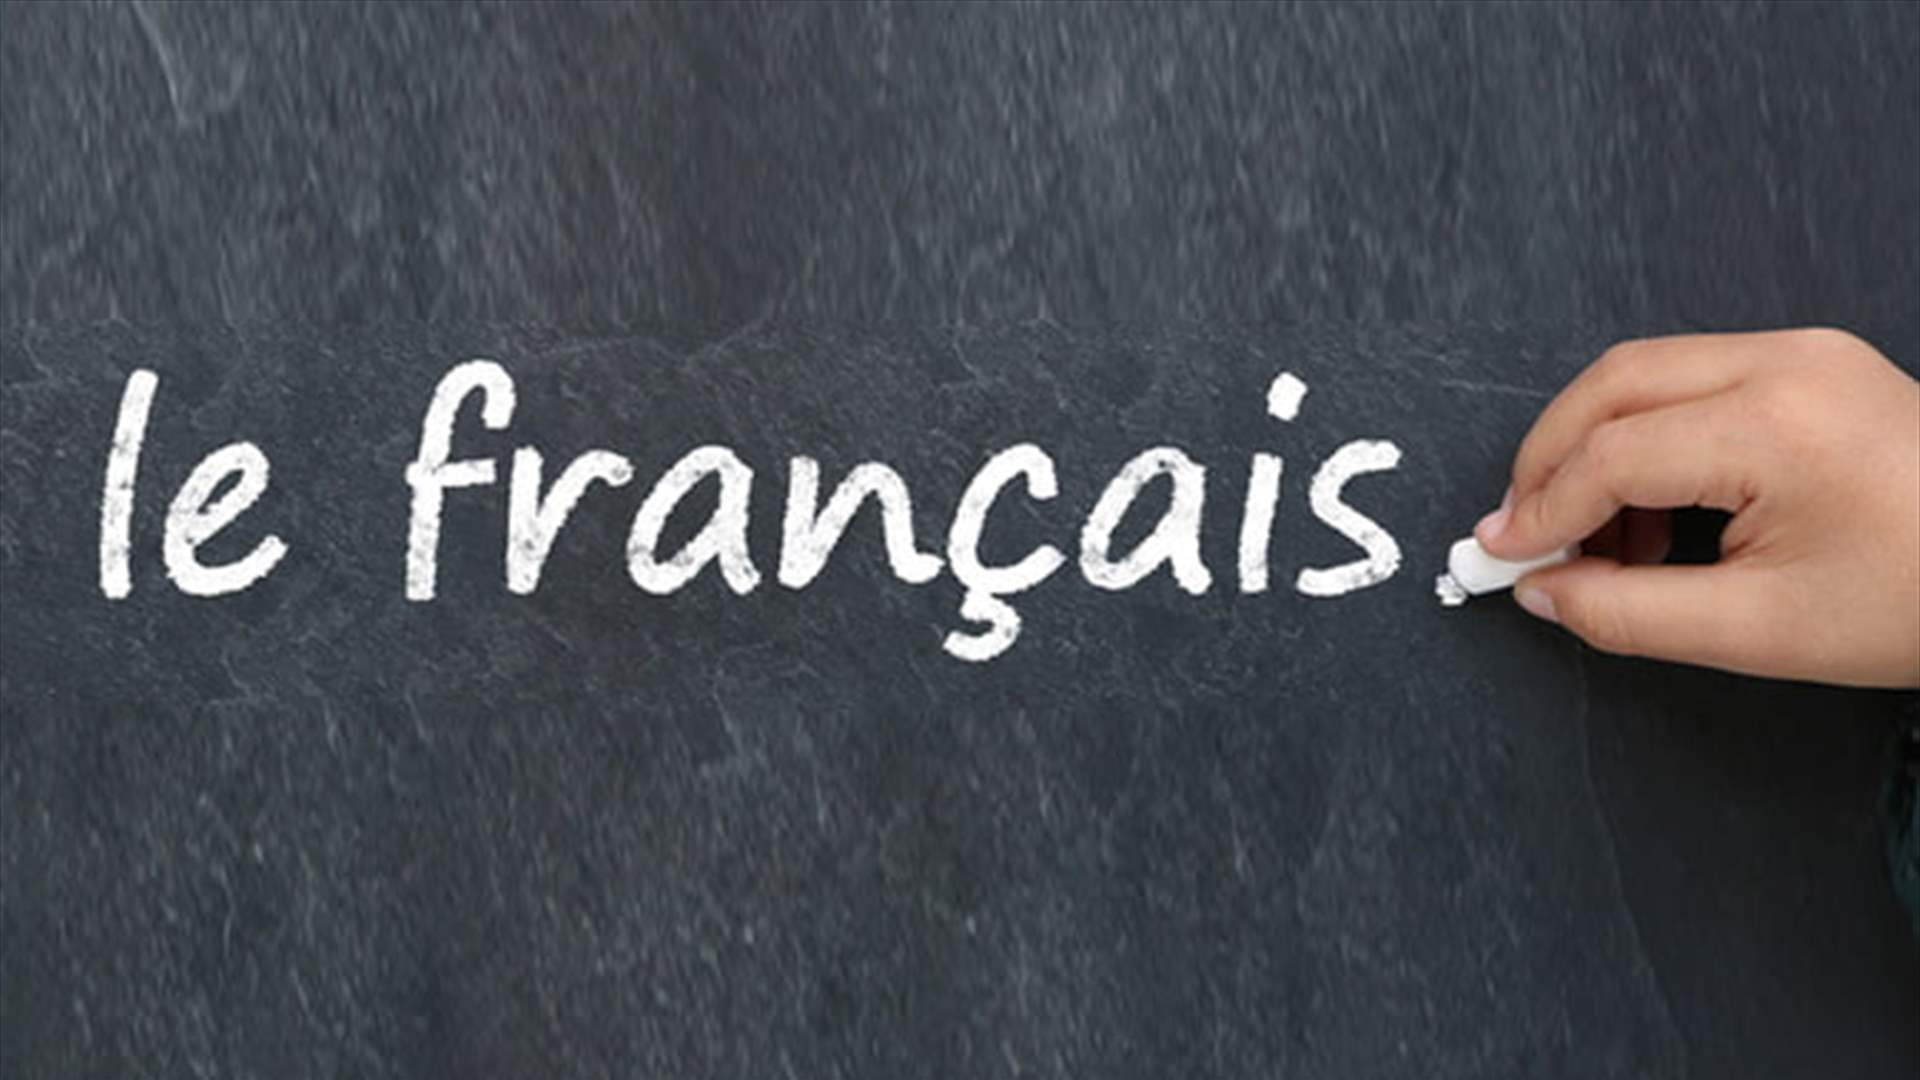 مستوى اللغة الفرنسية المطلوب للمهاجرين يرتفع على مر السنوات في فرنسا